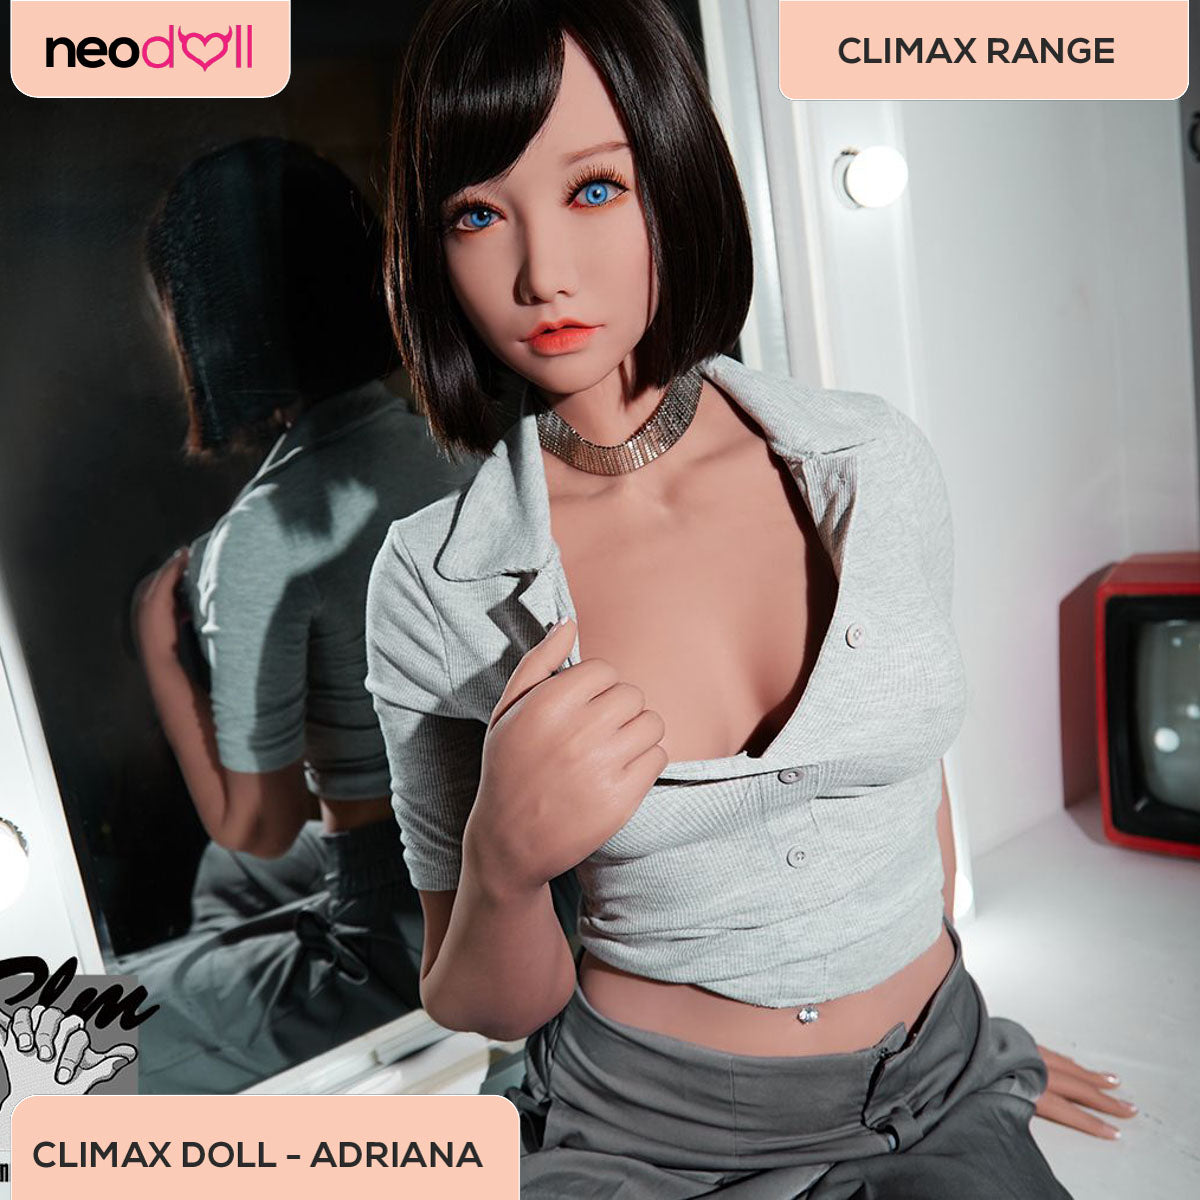 Climax Doll - Adriana - Realistic Sex Doll - Gel Breast - 158cm - Tan